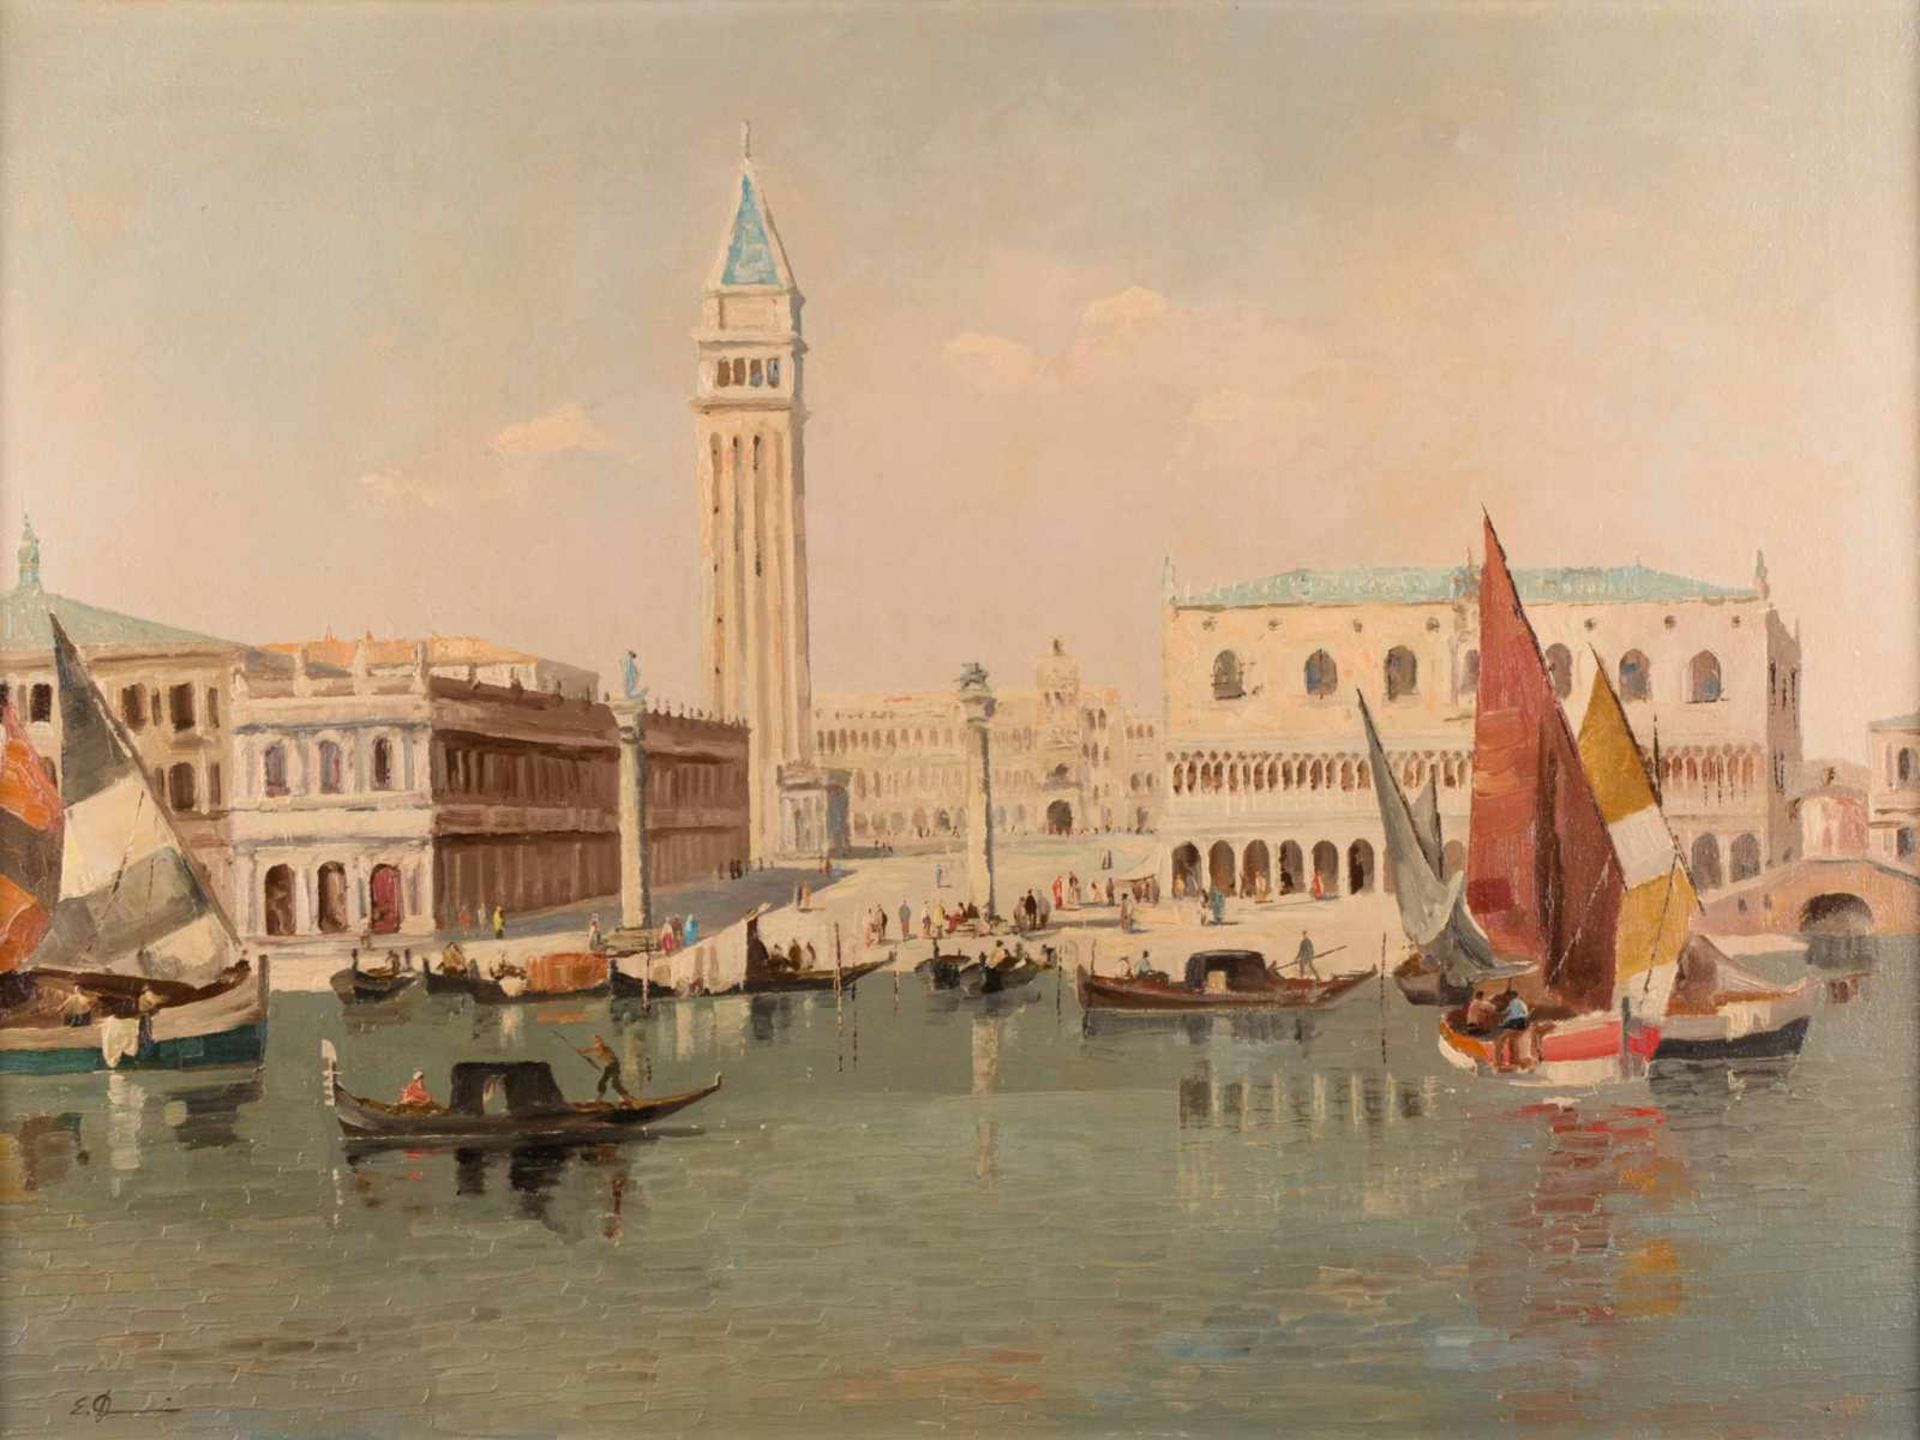 Erich DEMMIN (1911-1997) "Venedig" Gemälde Öl/Leinwand, 60 cm x 80 cm, links unten signiert "Venice"